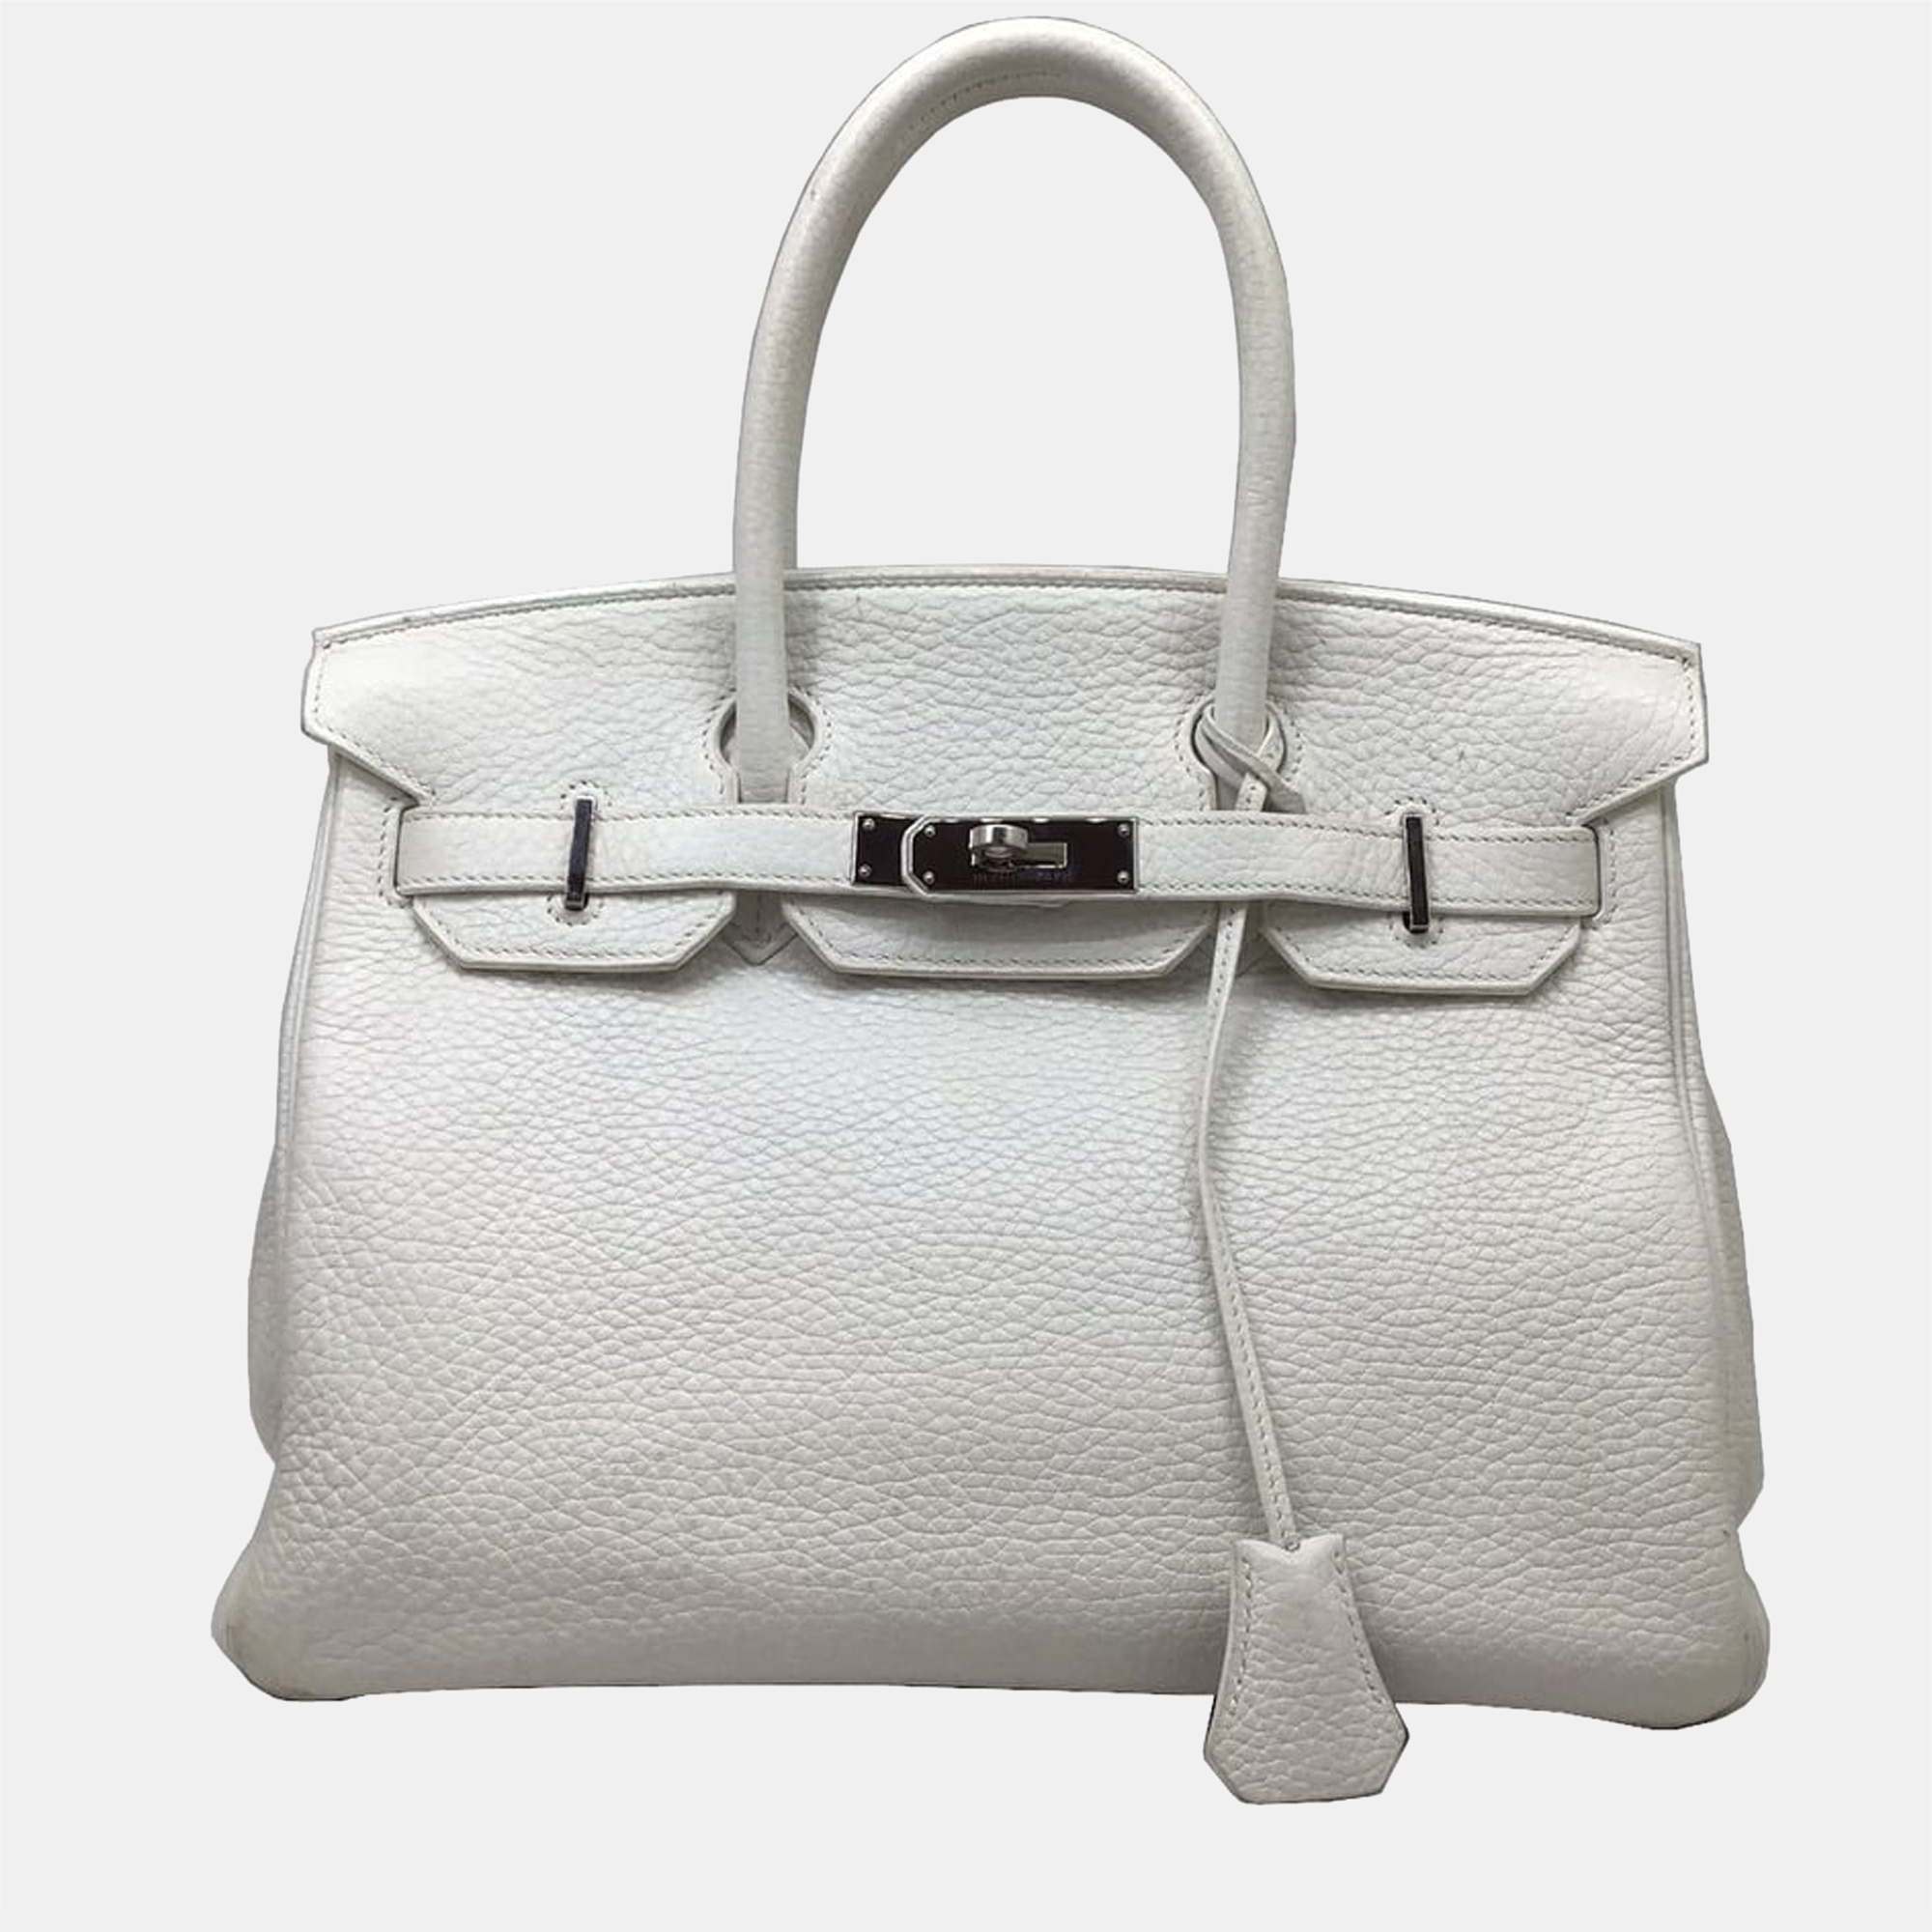 Hermes Birkin 30 Taurillon Clemence White Silver Hardware Handbag Bag Women's Men's Unisex X Engraved (2016)